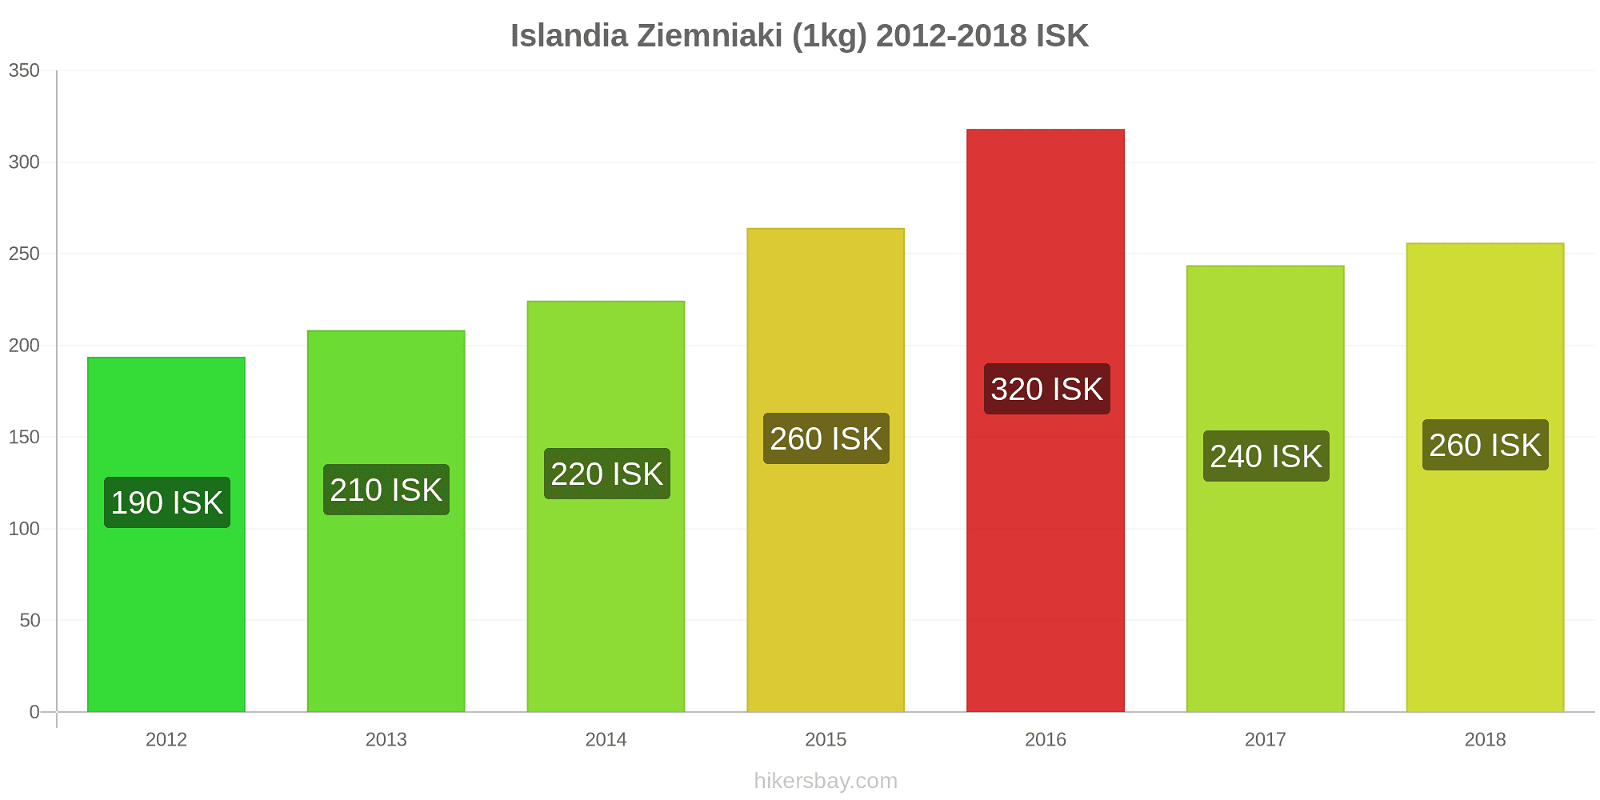 Islandia zmiany cen Ziemniaki (1kg) hikersbay.com